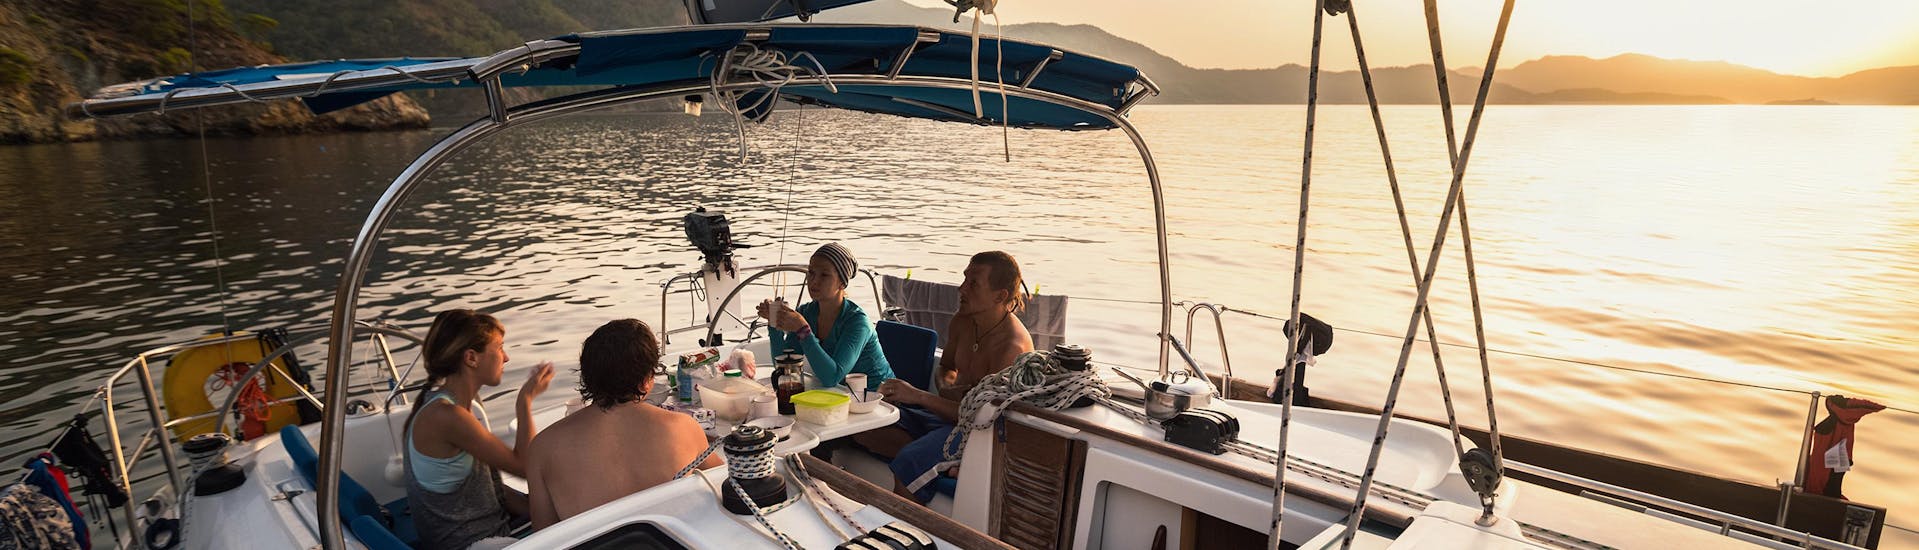 Gente cenando durante un paseo en barco